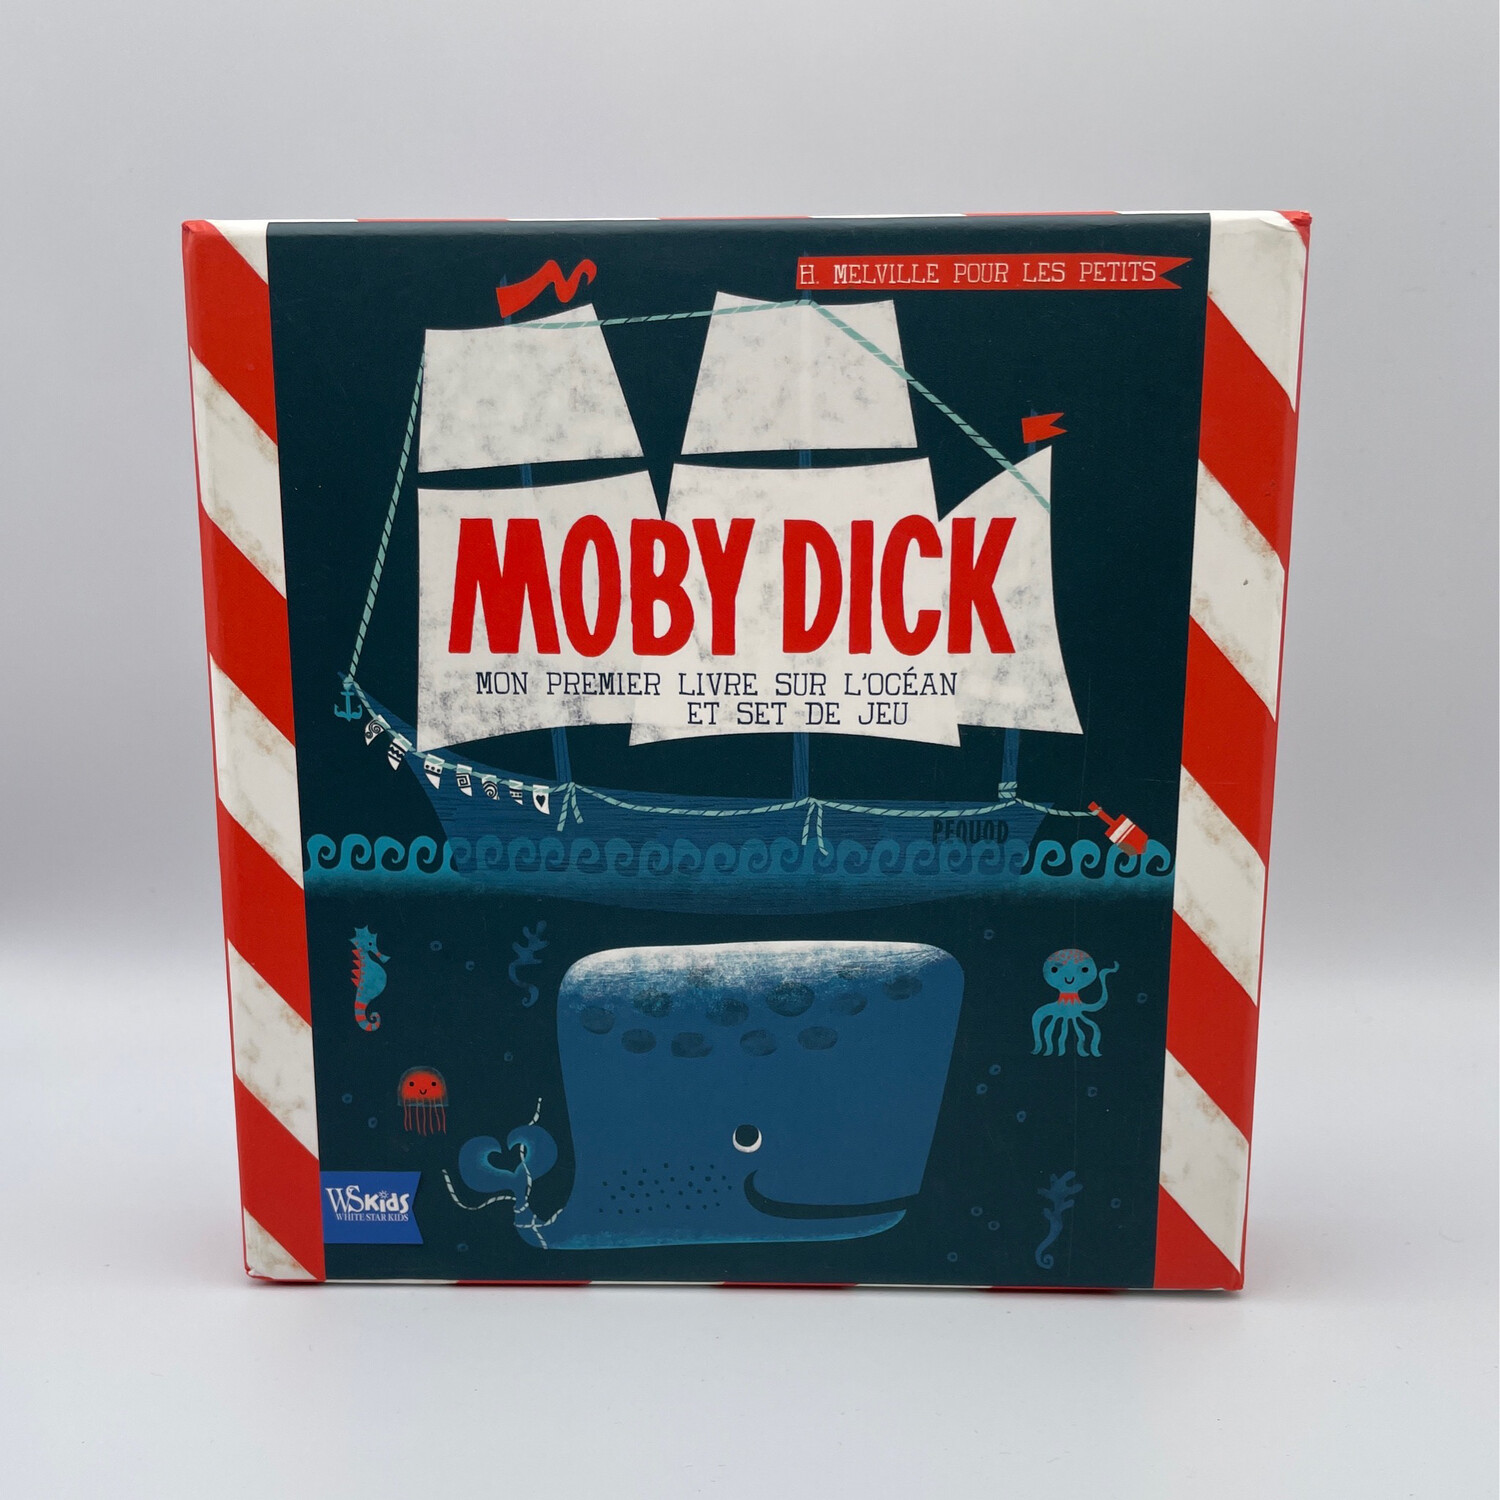 Moby Dick livre et set de jeu de White star kids